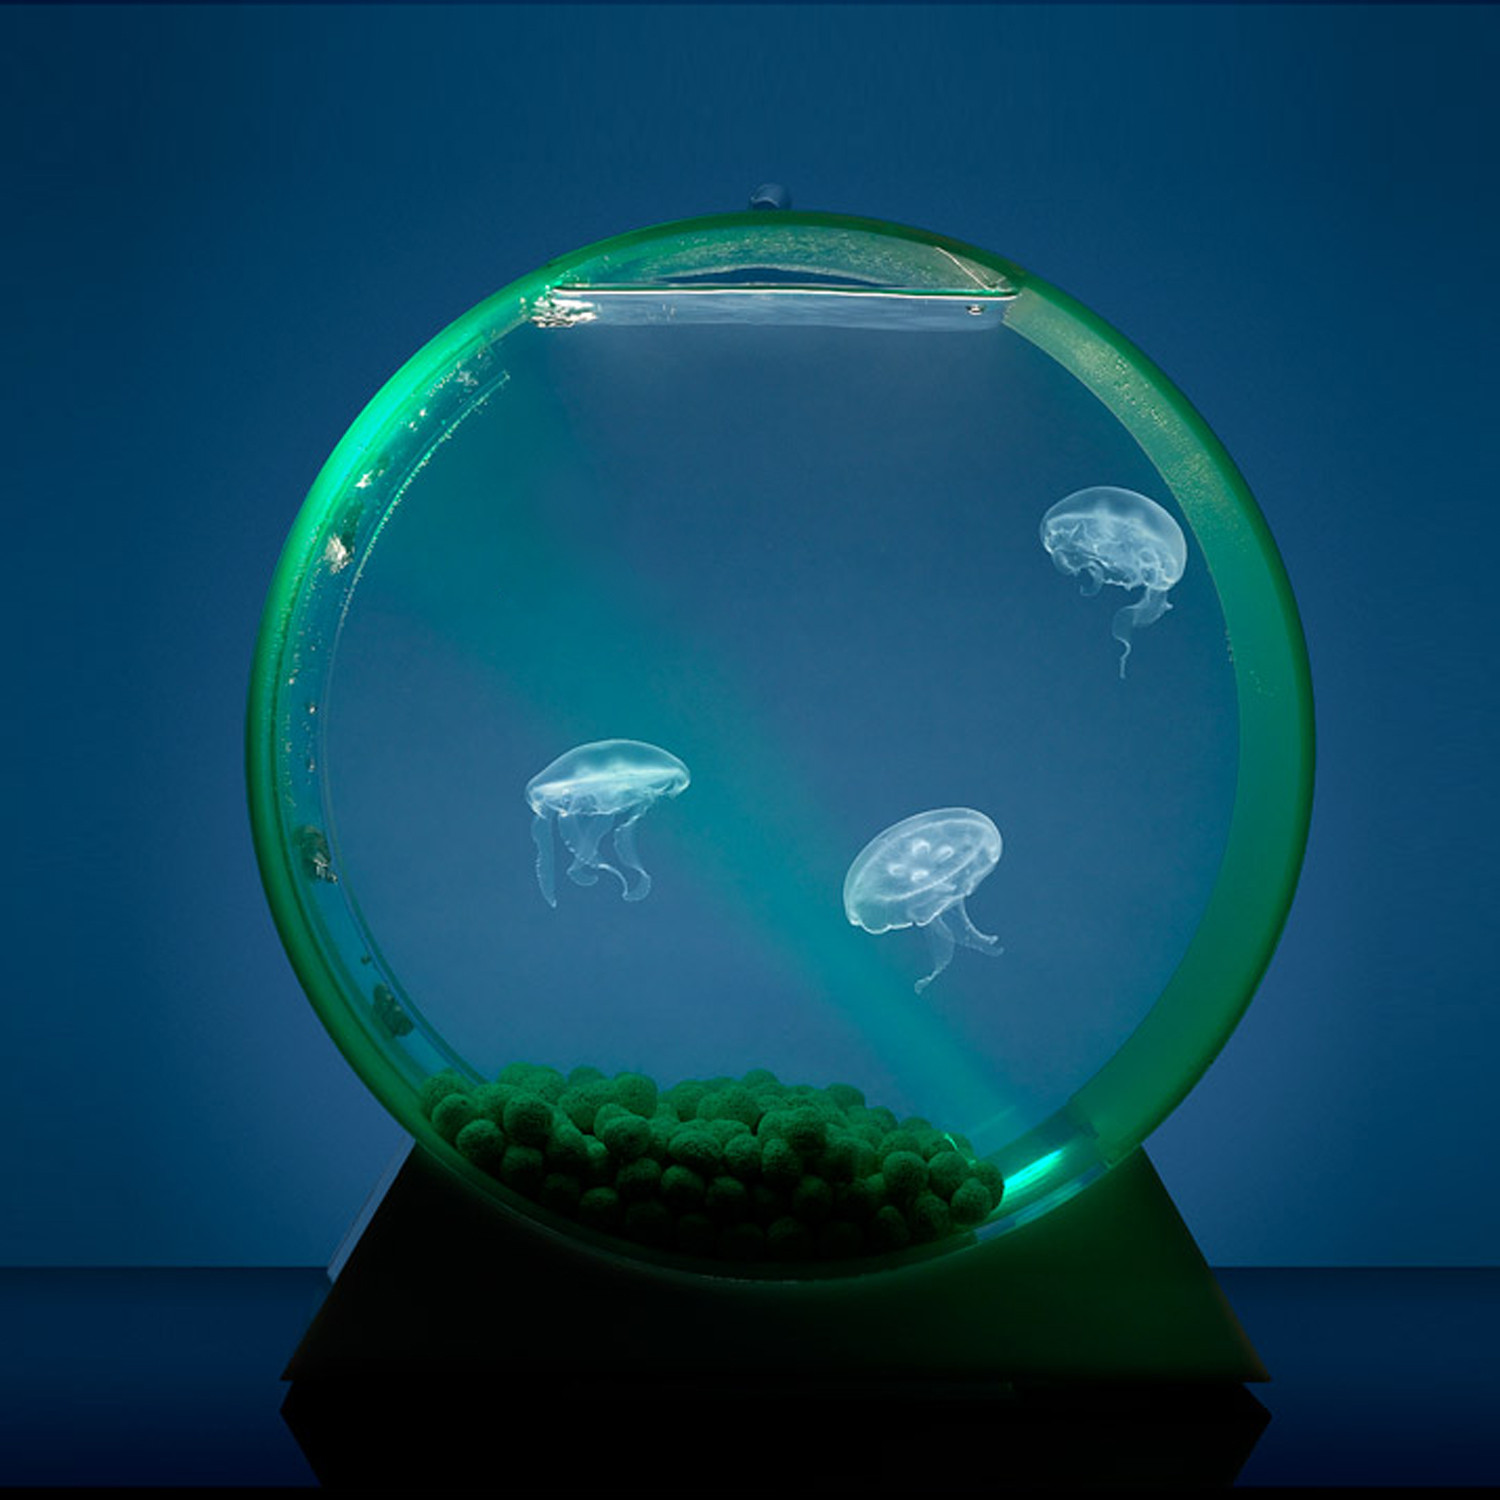 Купить живых рыбок для аквариума. Аквариум led desktop Jellyfish Tank. Аквариумные медузы. Аквариум с медузами Orbit 20. Аквариум с медузами.